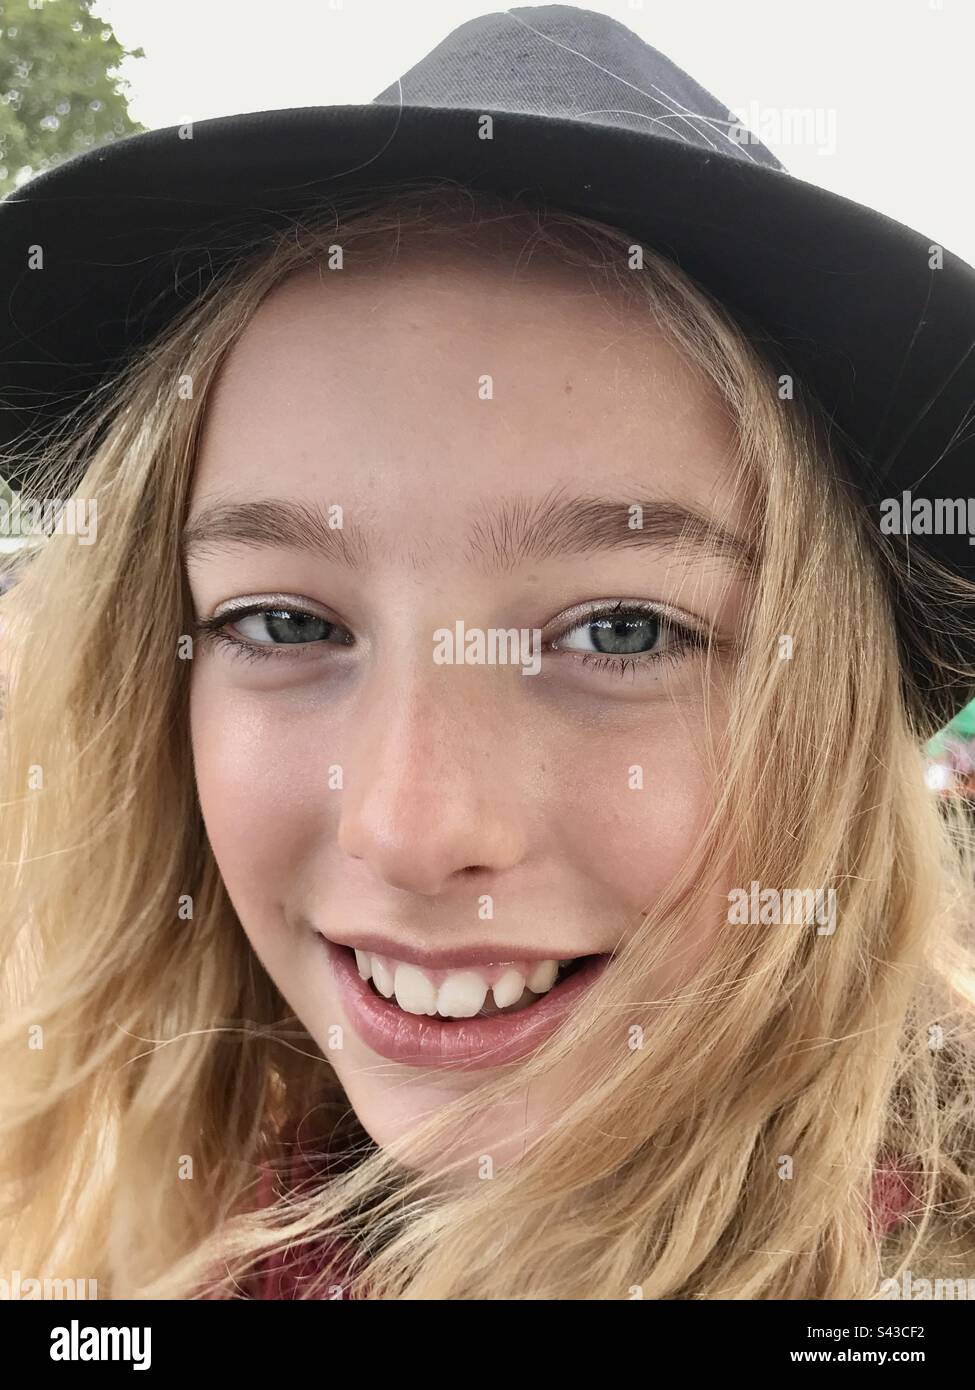 Ein Mädchen im Teenageralter, das vor Freude lächelt, in einem Fedora-Hut auf einem Musikfestival Stockfoto